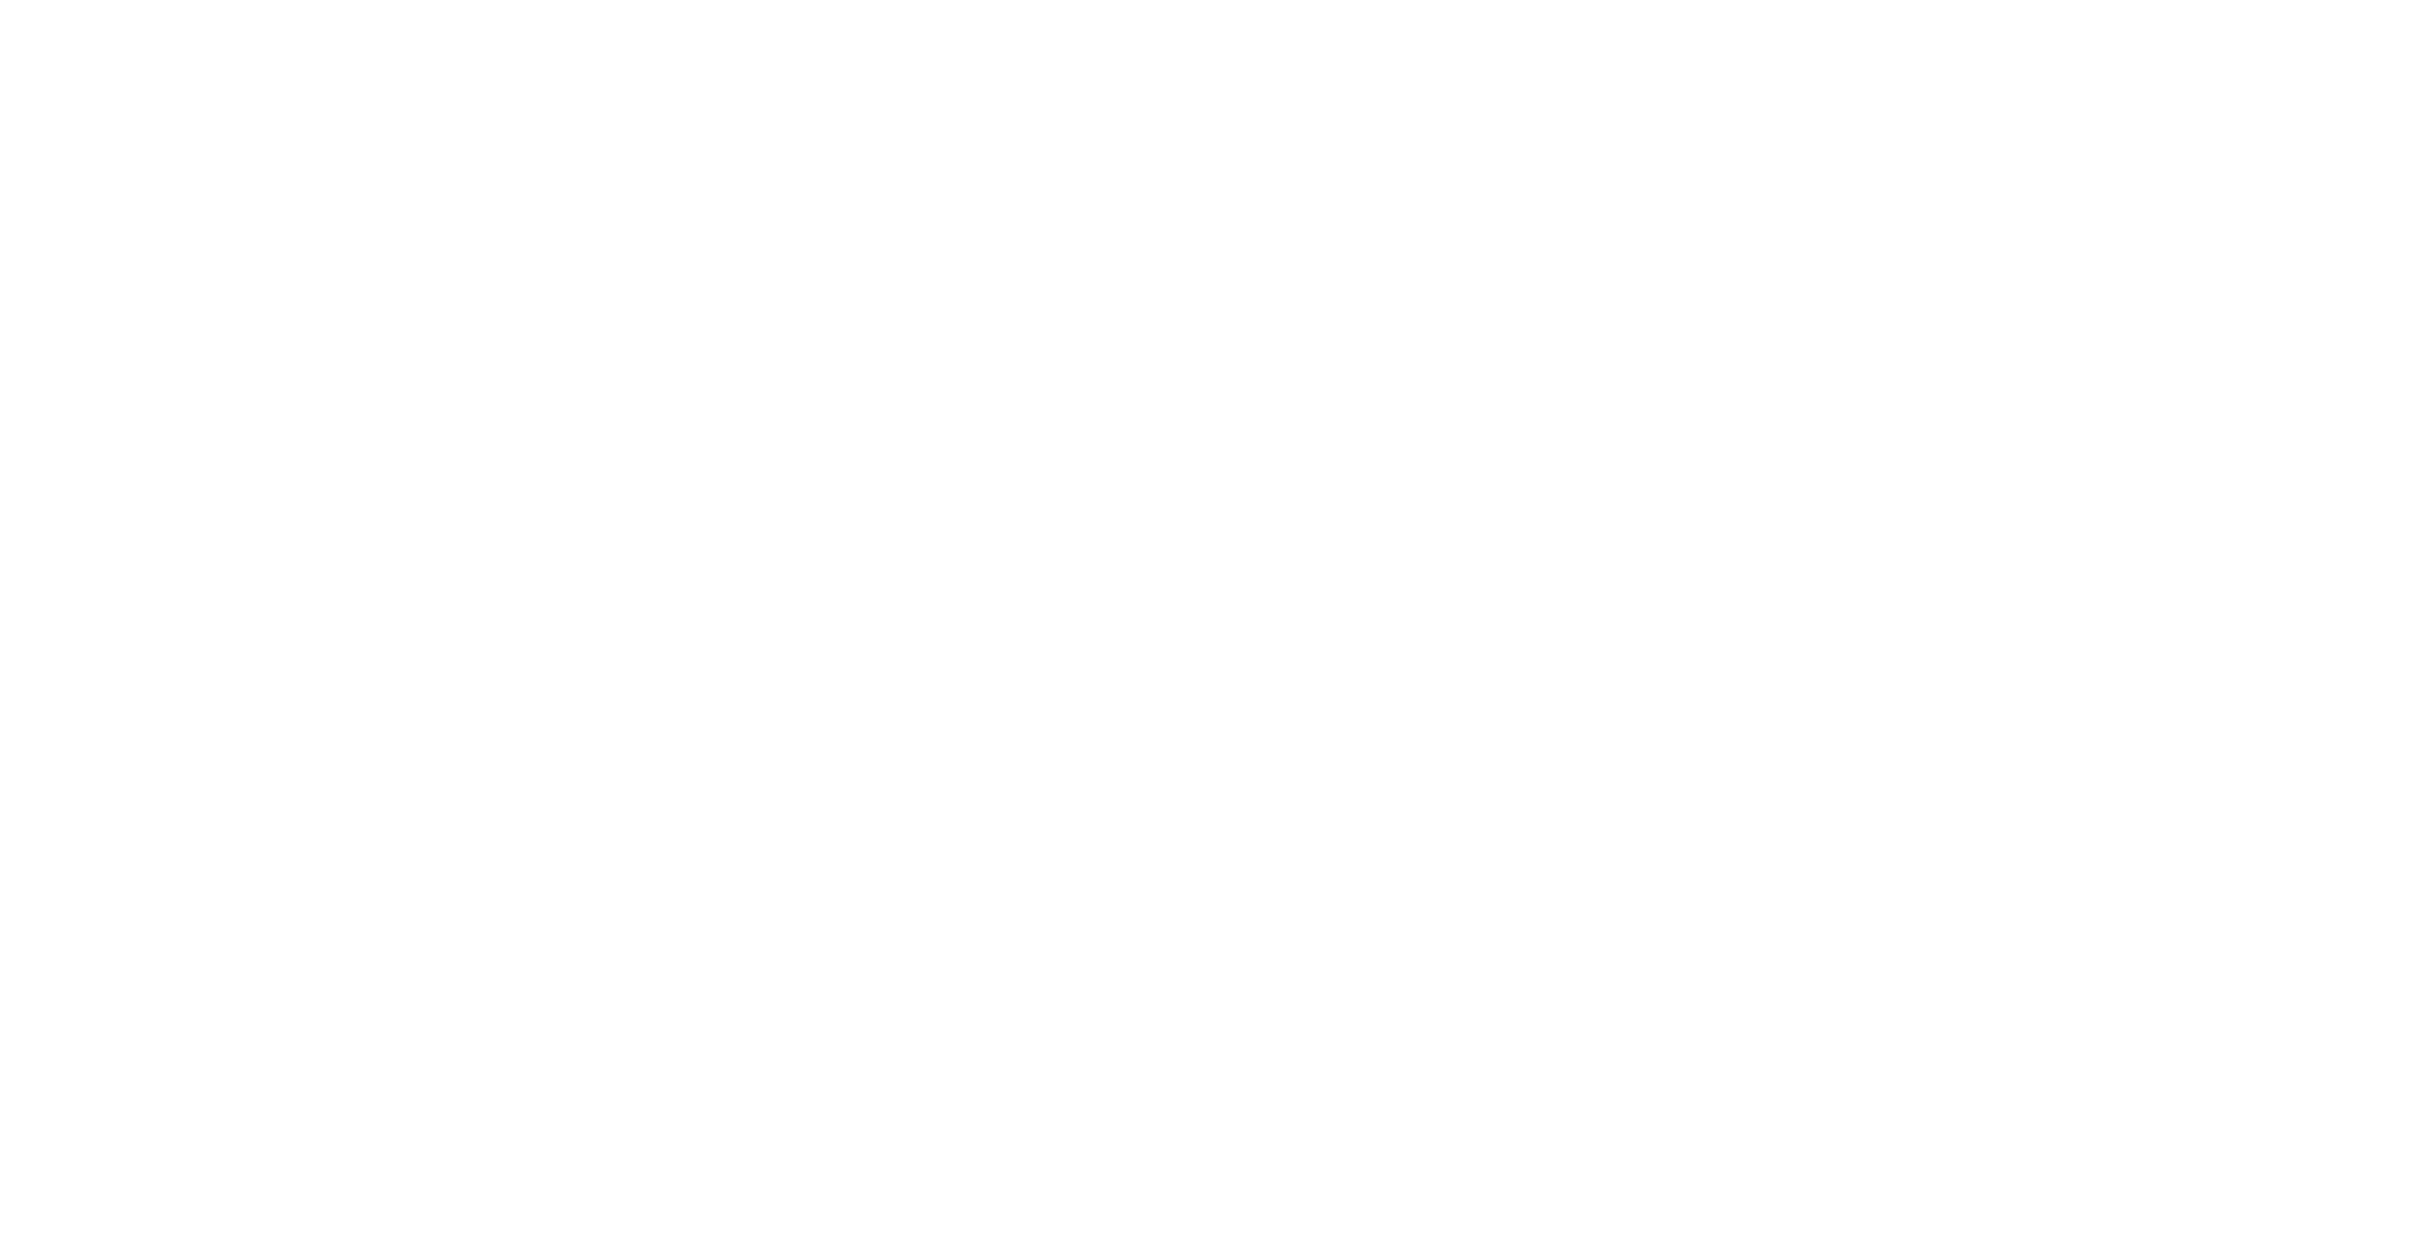 2019 Carbon Neutral+ Organisation